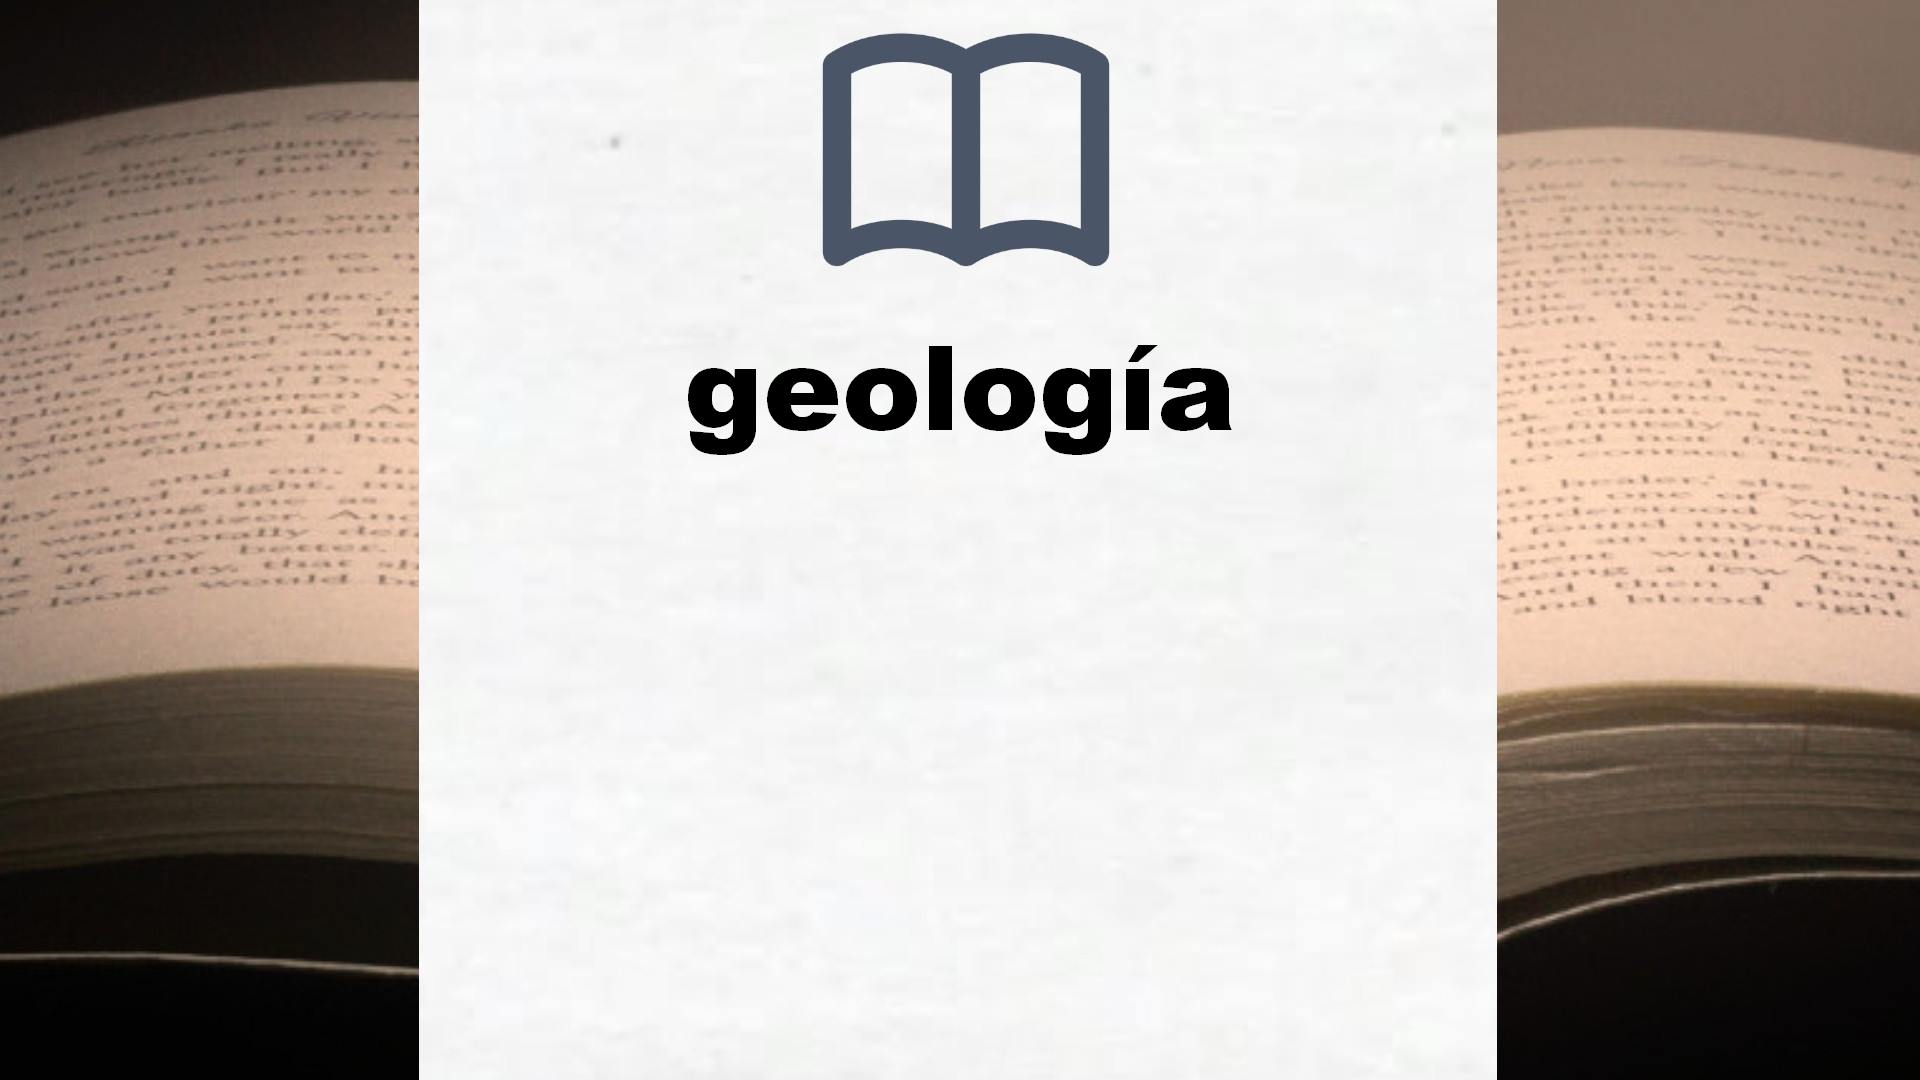 Libros sobre geología